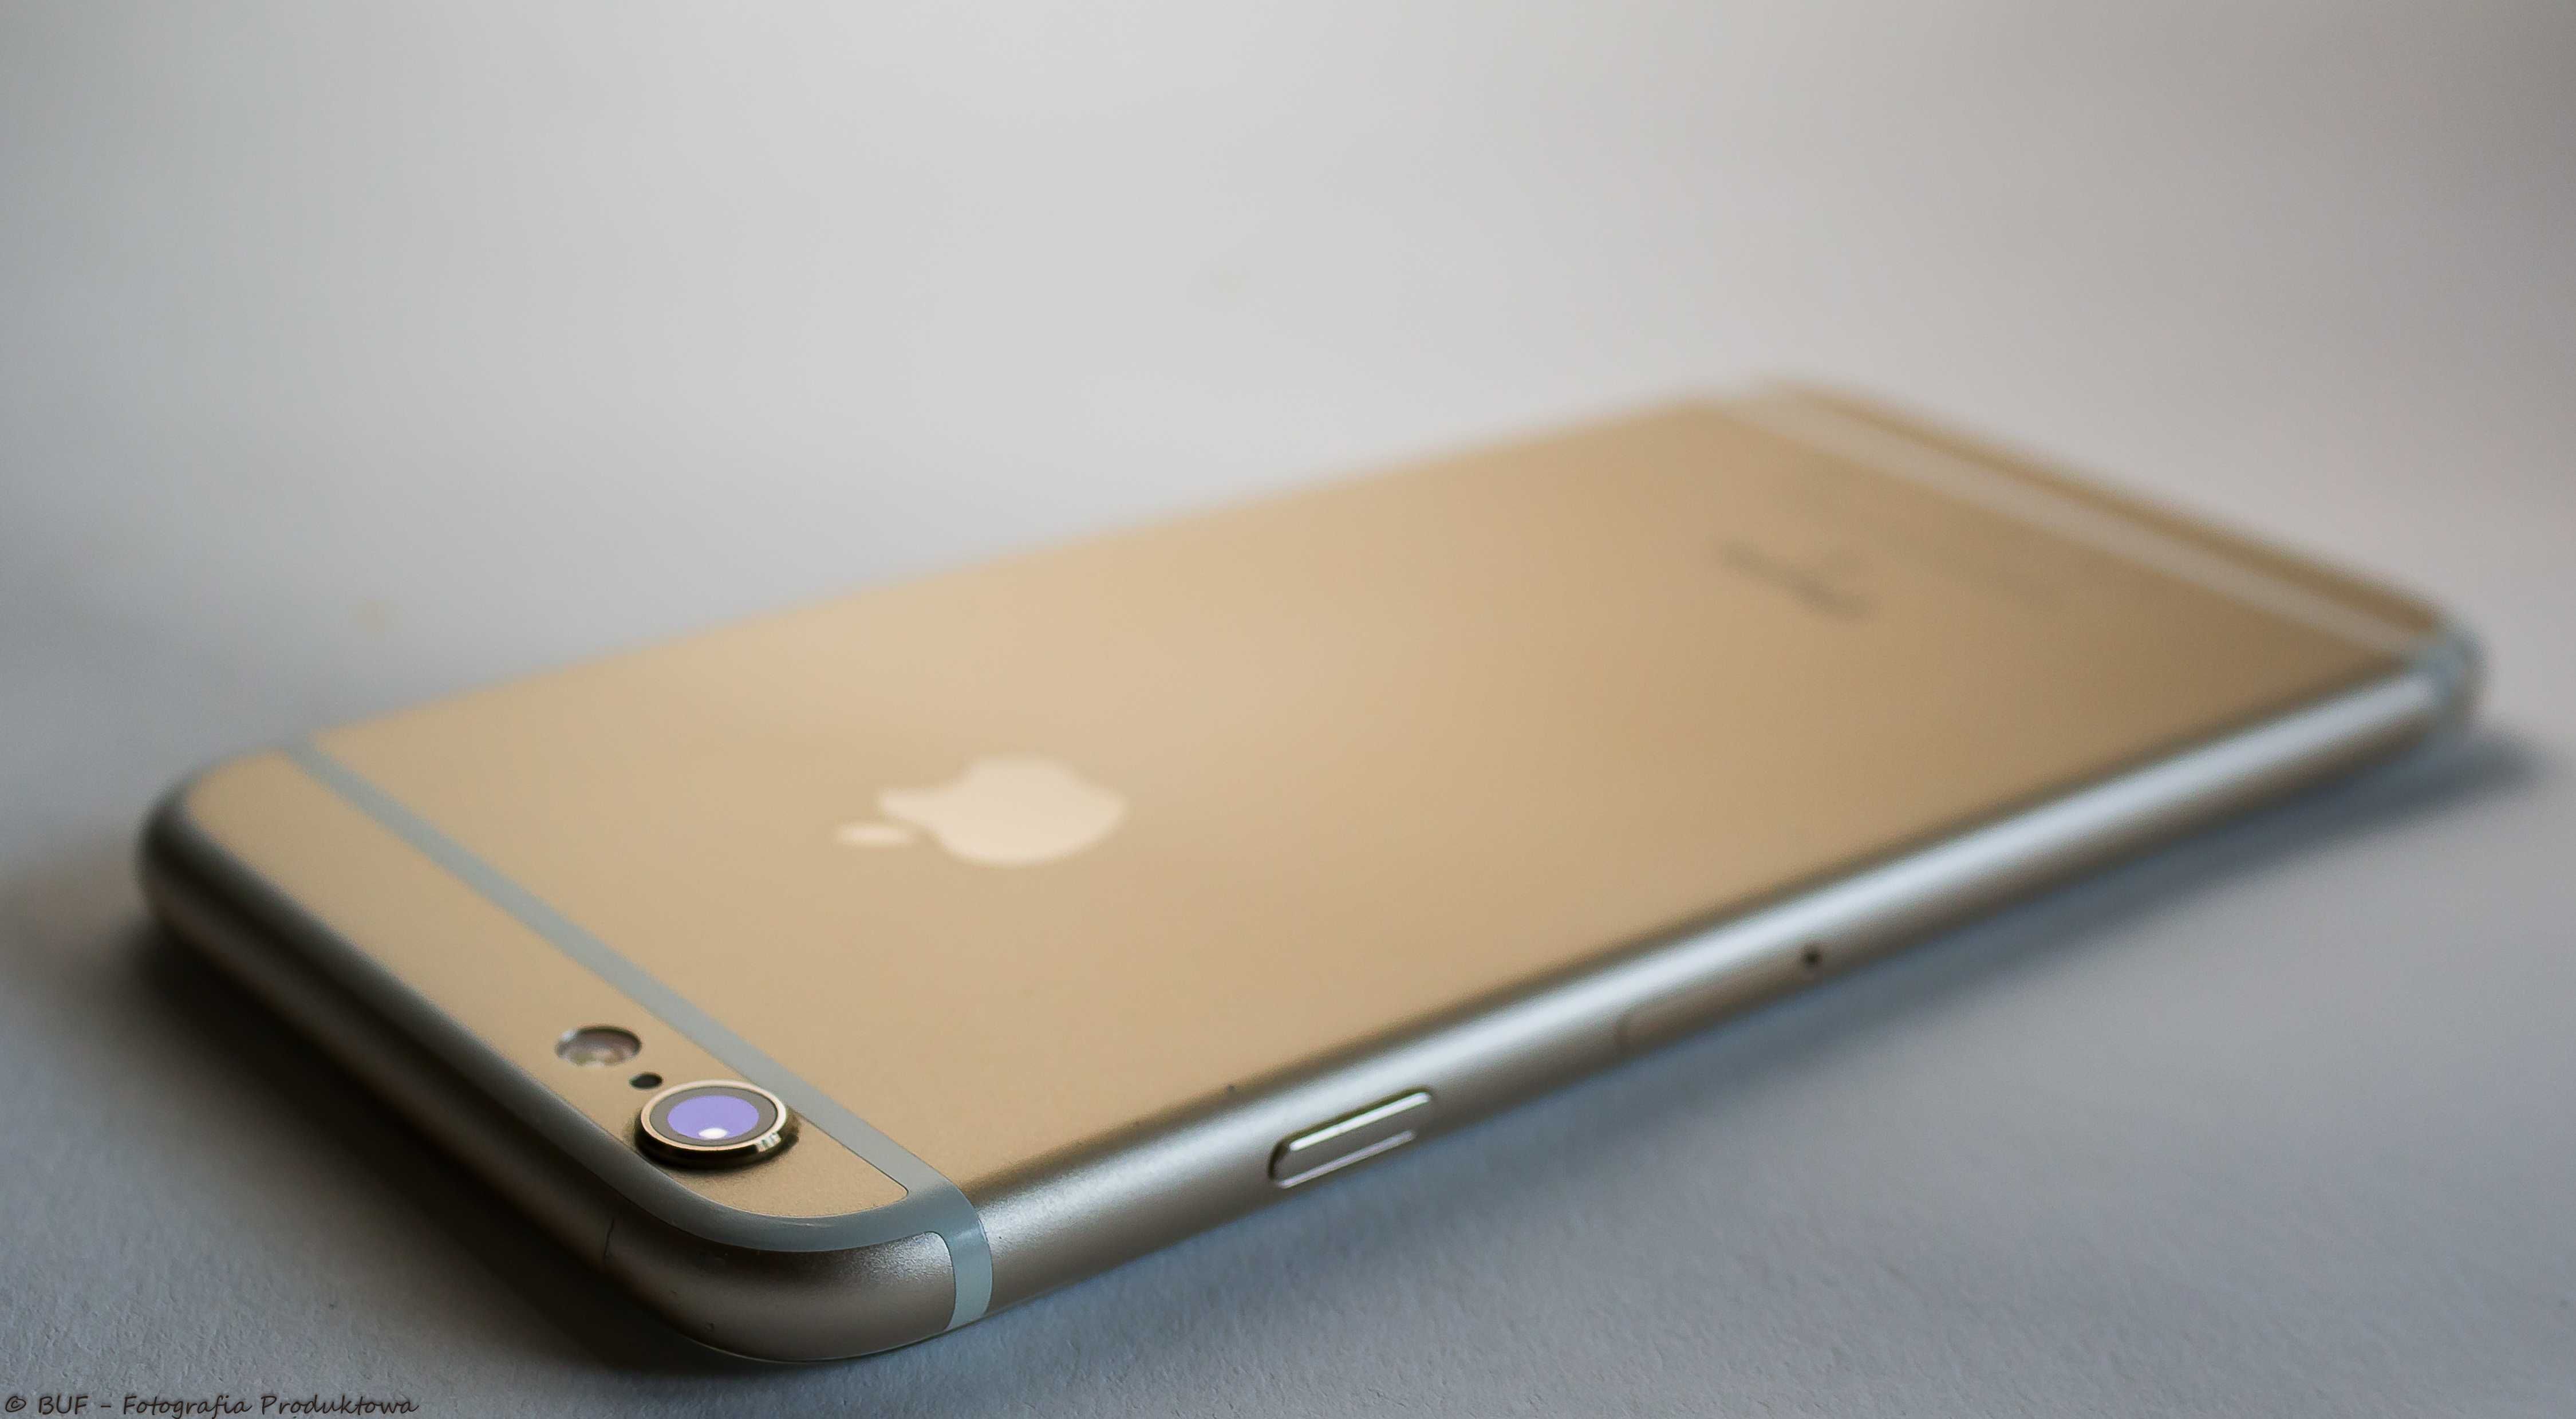 iPhone 6s White Mirror Złoty Biel 32 GB iOs 15.8.2 Gold Limited